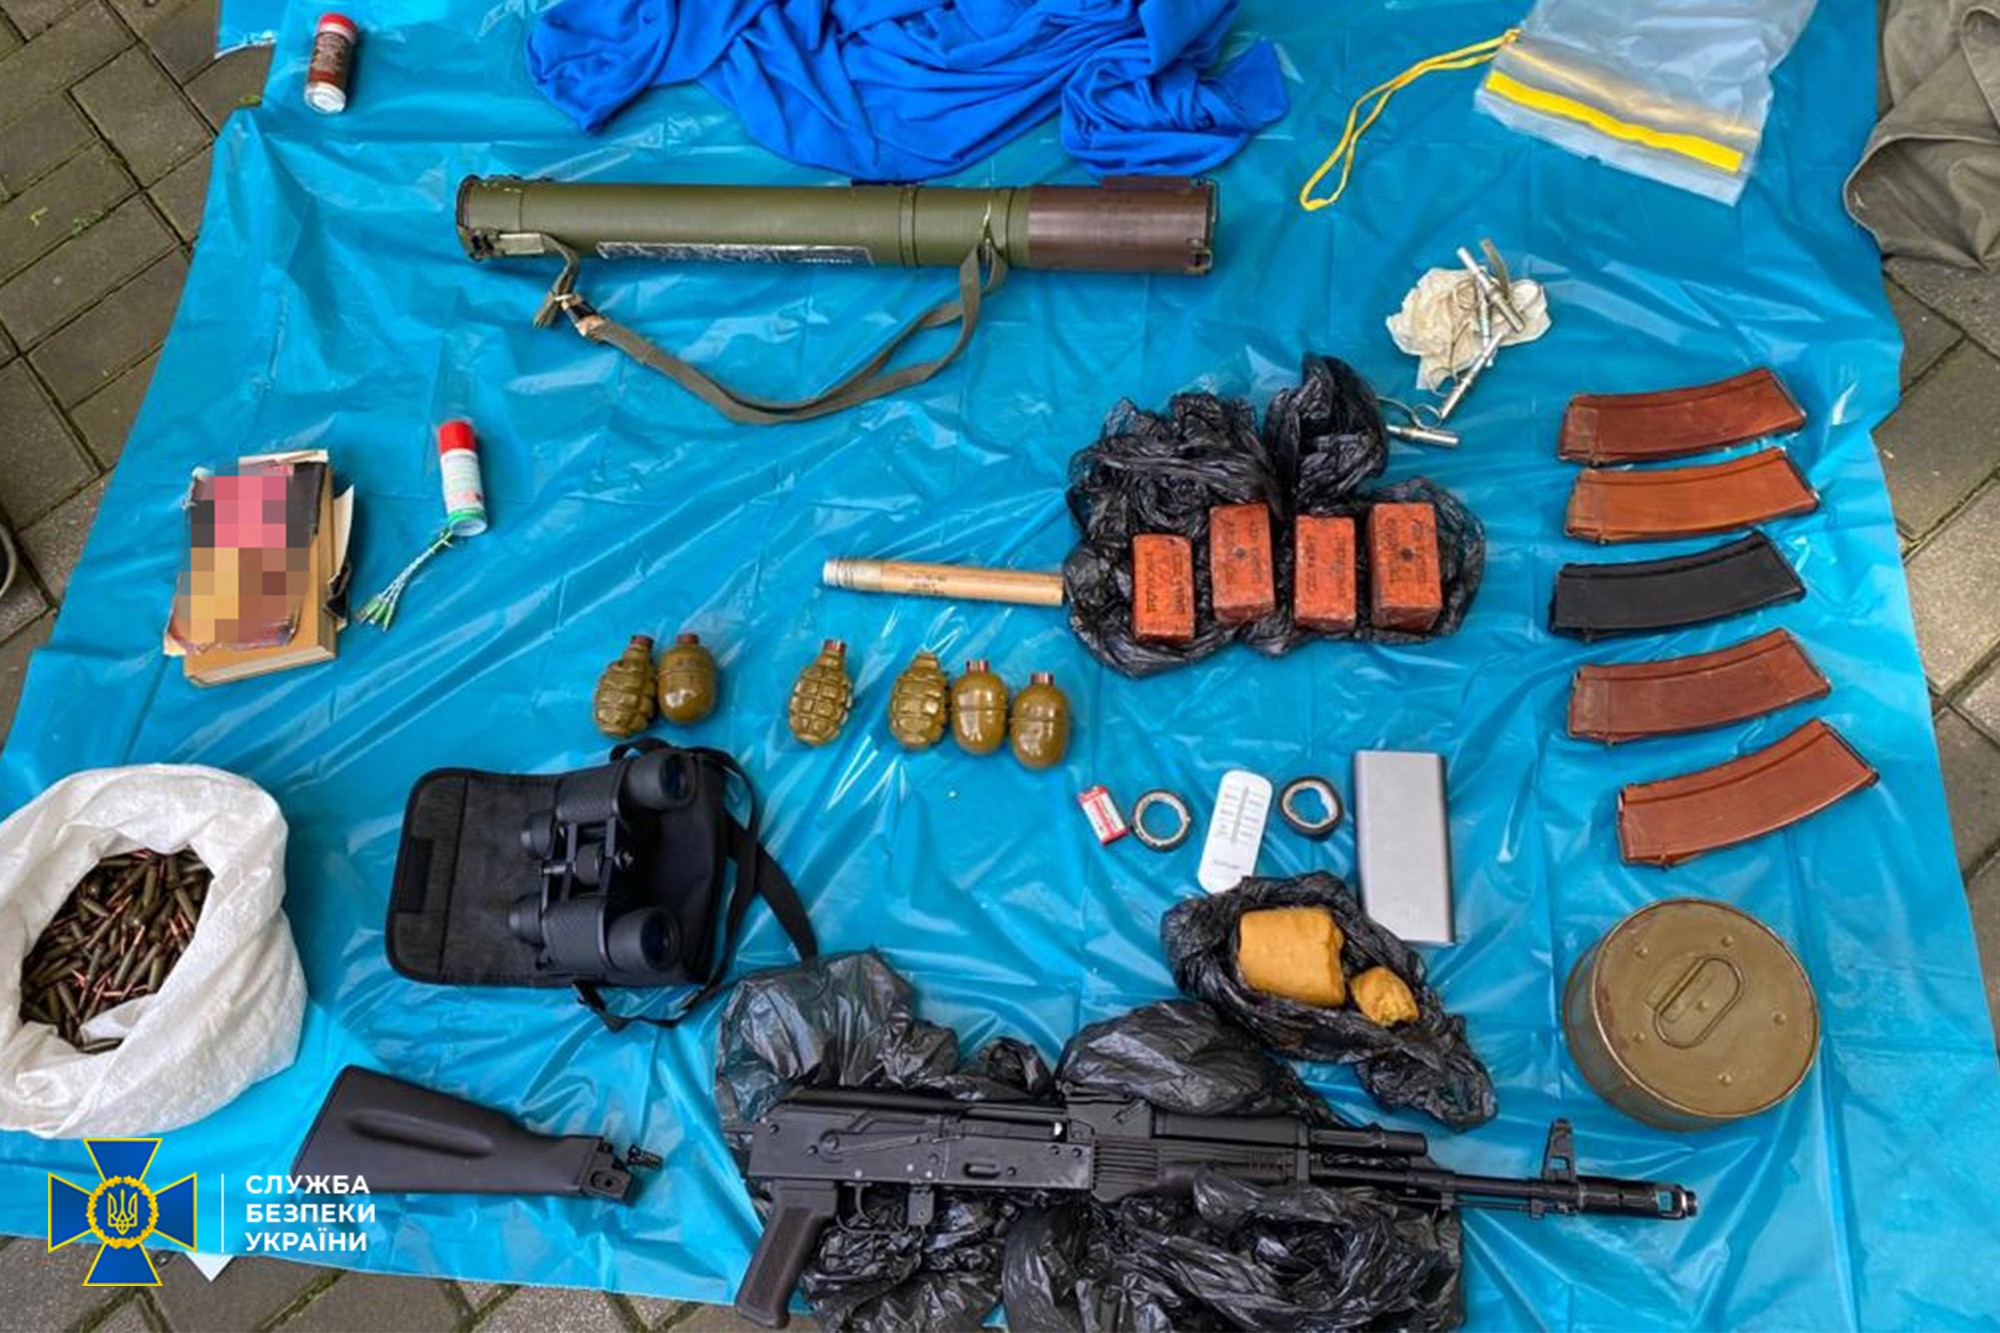 СБУ обнаружила арсенал боеприпасов в центре Киева (видео)